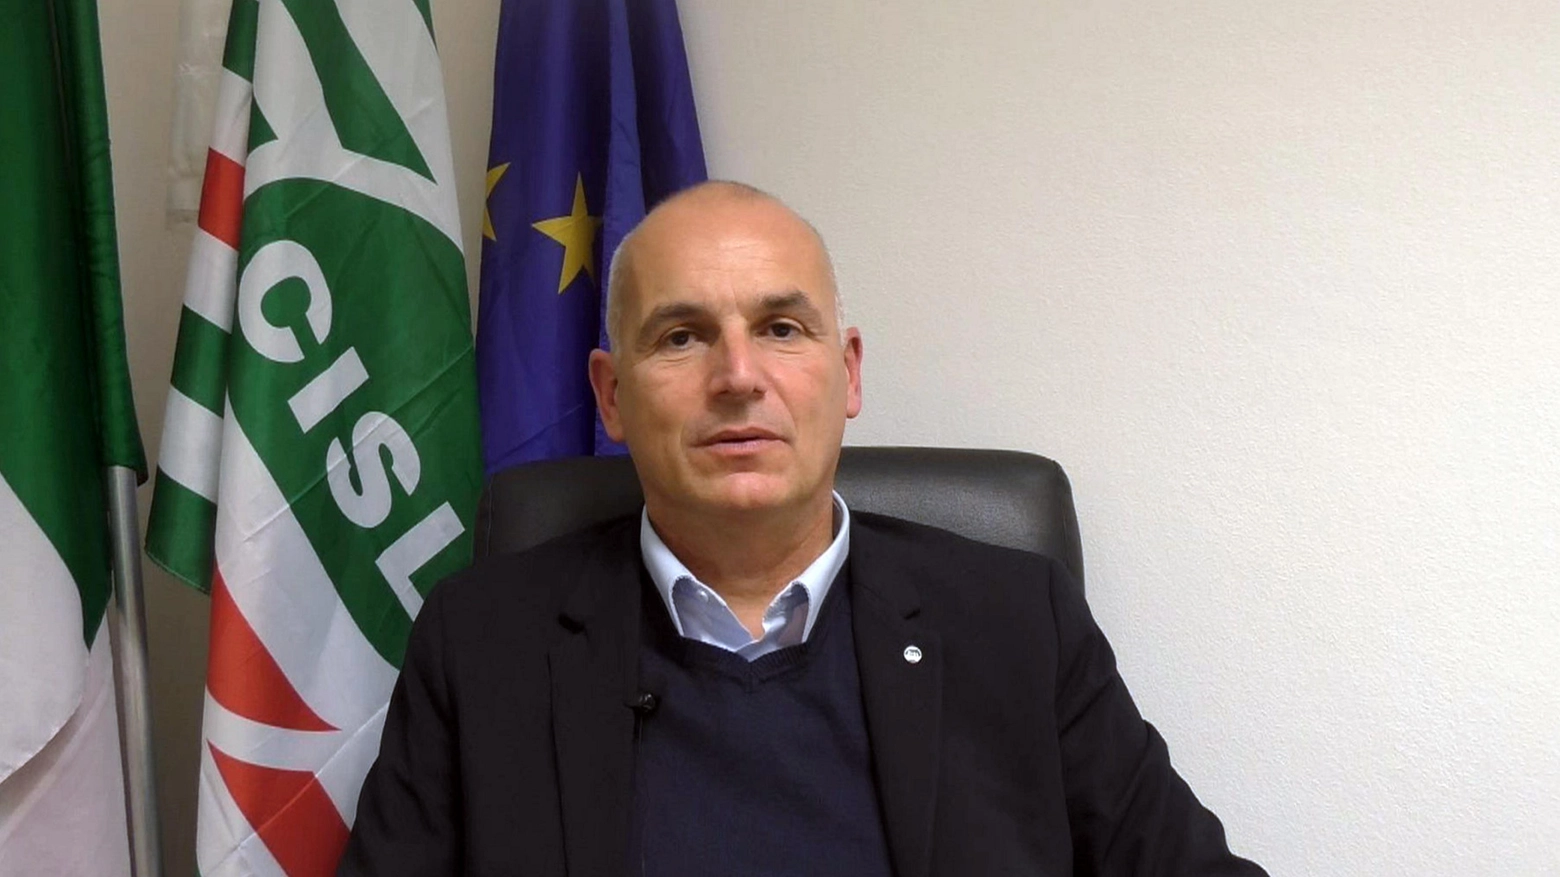 L’analisi di Francesco Marinelli, segretario generale della Cisl Romagna "Le vocazioni dei territori non si toccano, ma servono scelte su Area vasta".